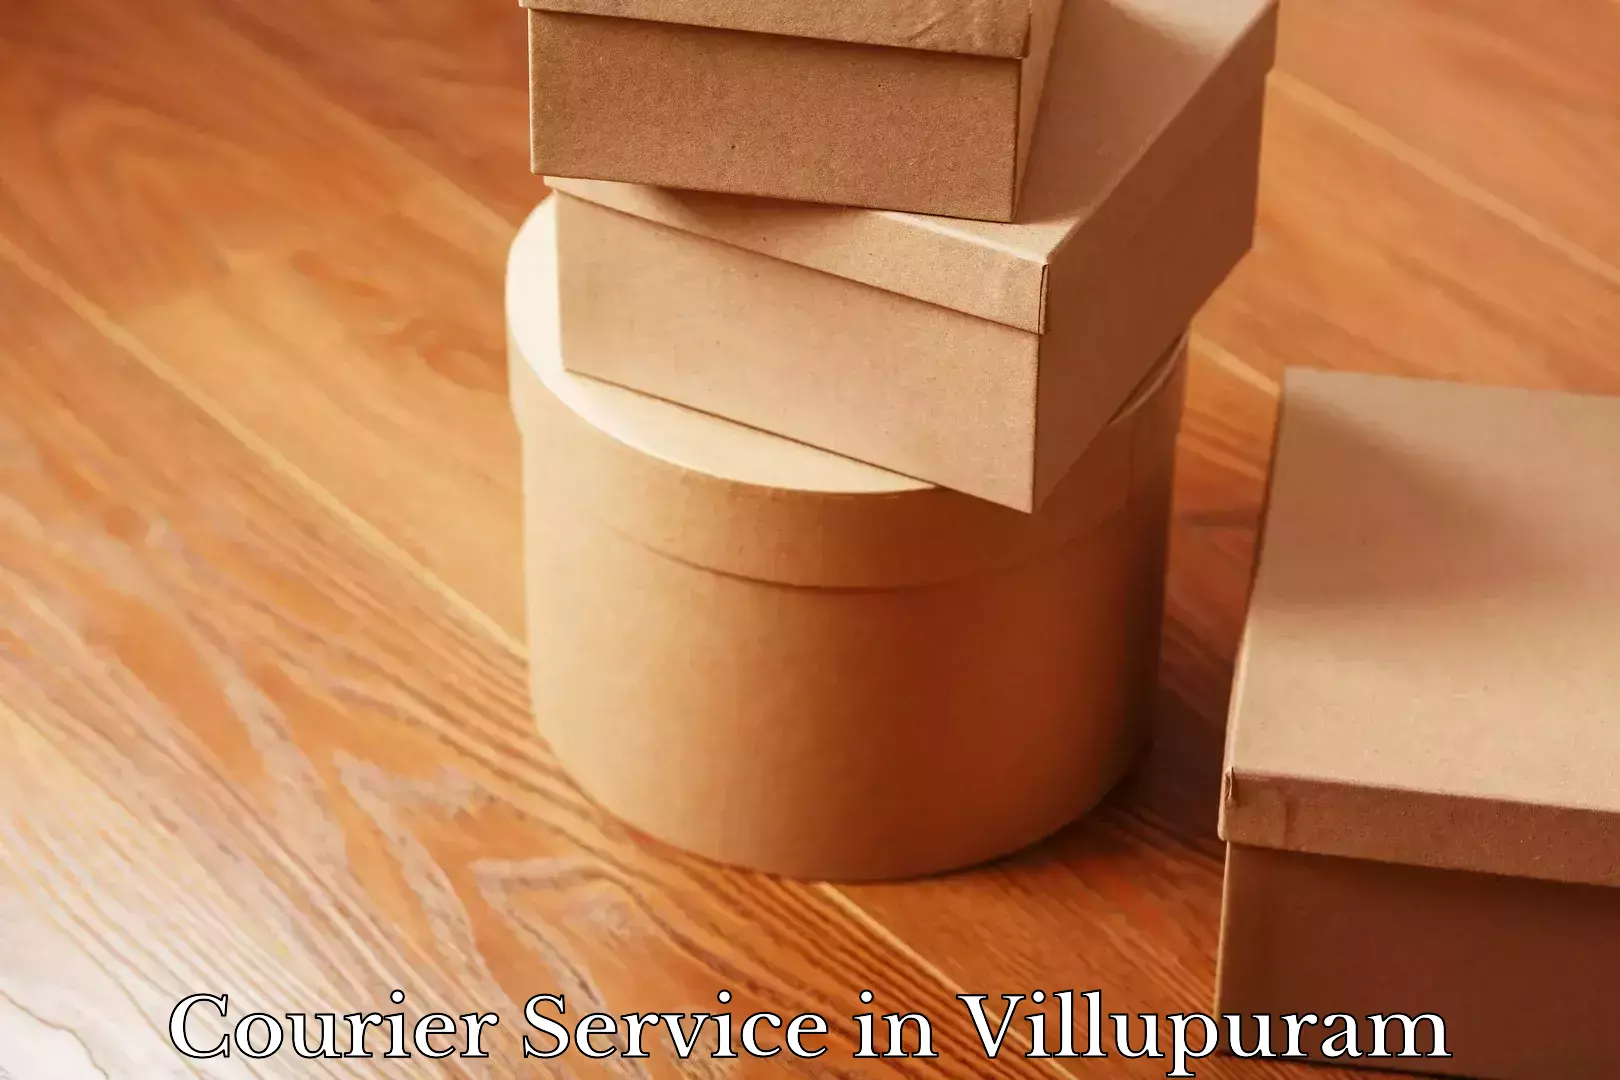 Integrated shipping solutions in Villupuram